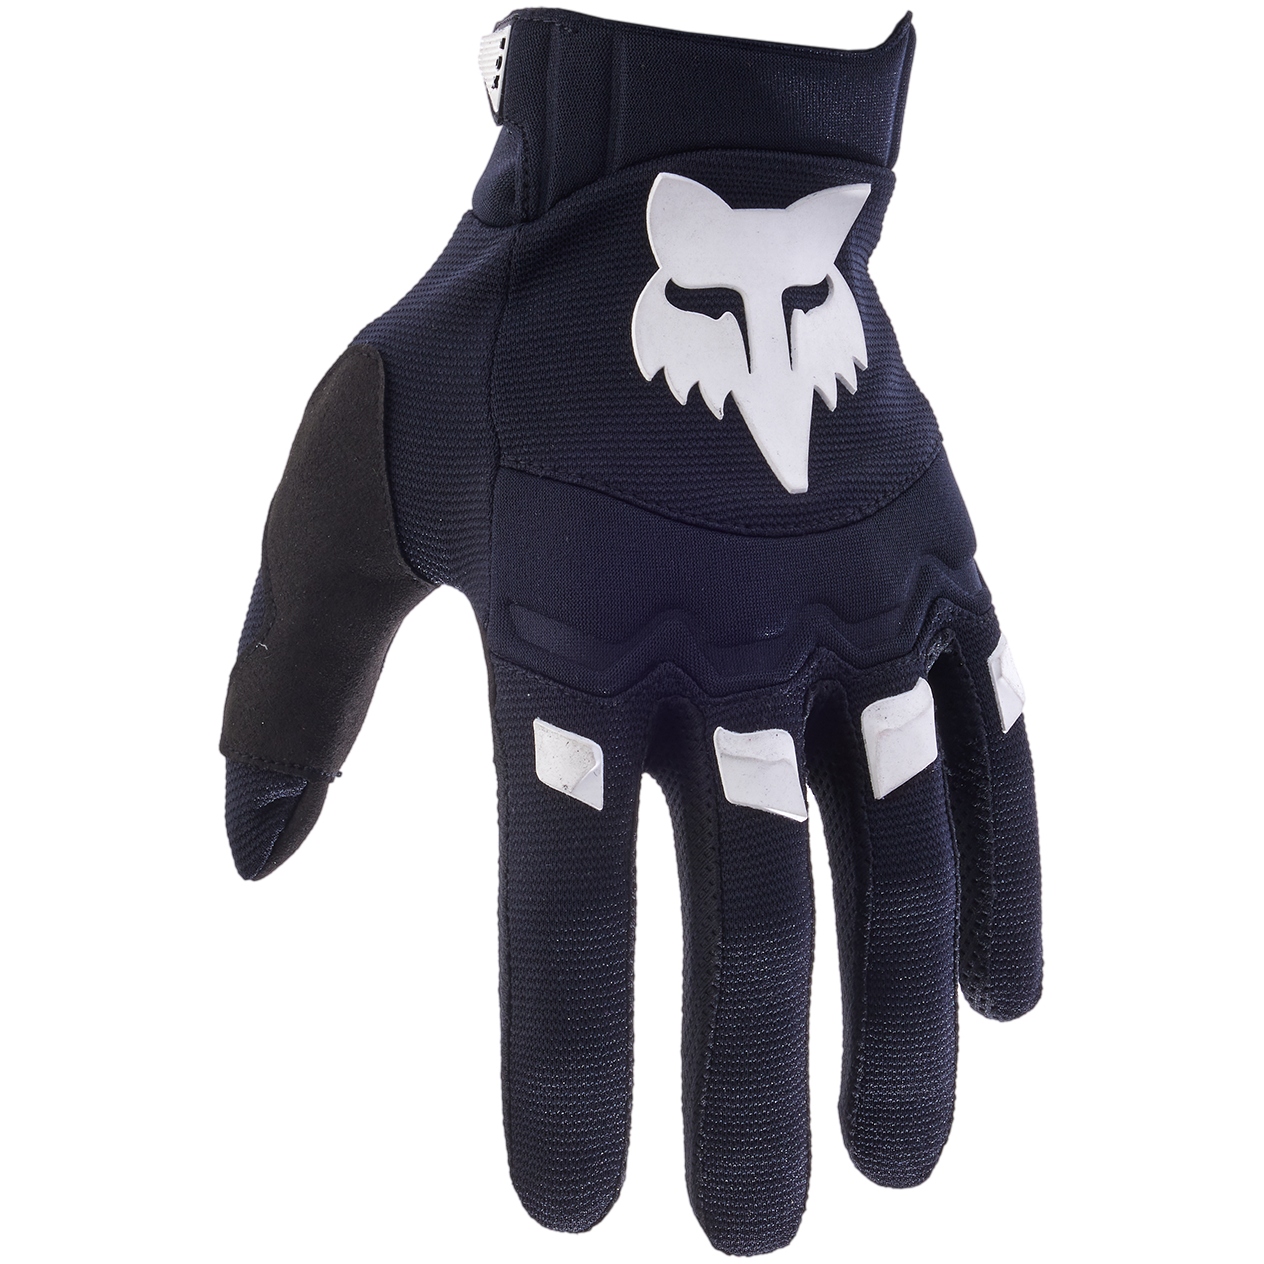 Productfoto van FOX Dirtpaw MTB Handschoenen Heren - zwart/wit